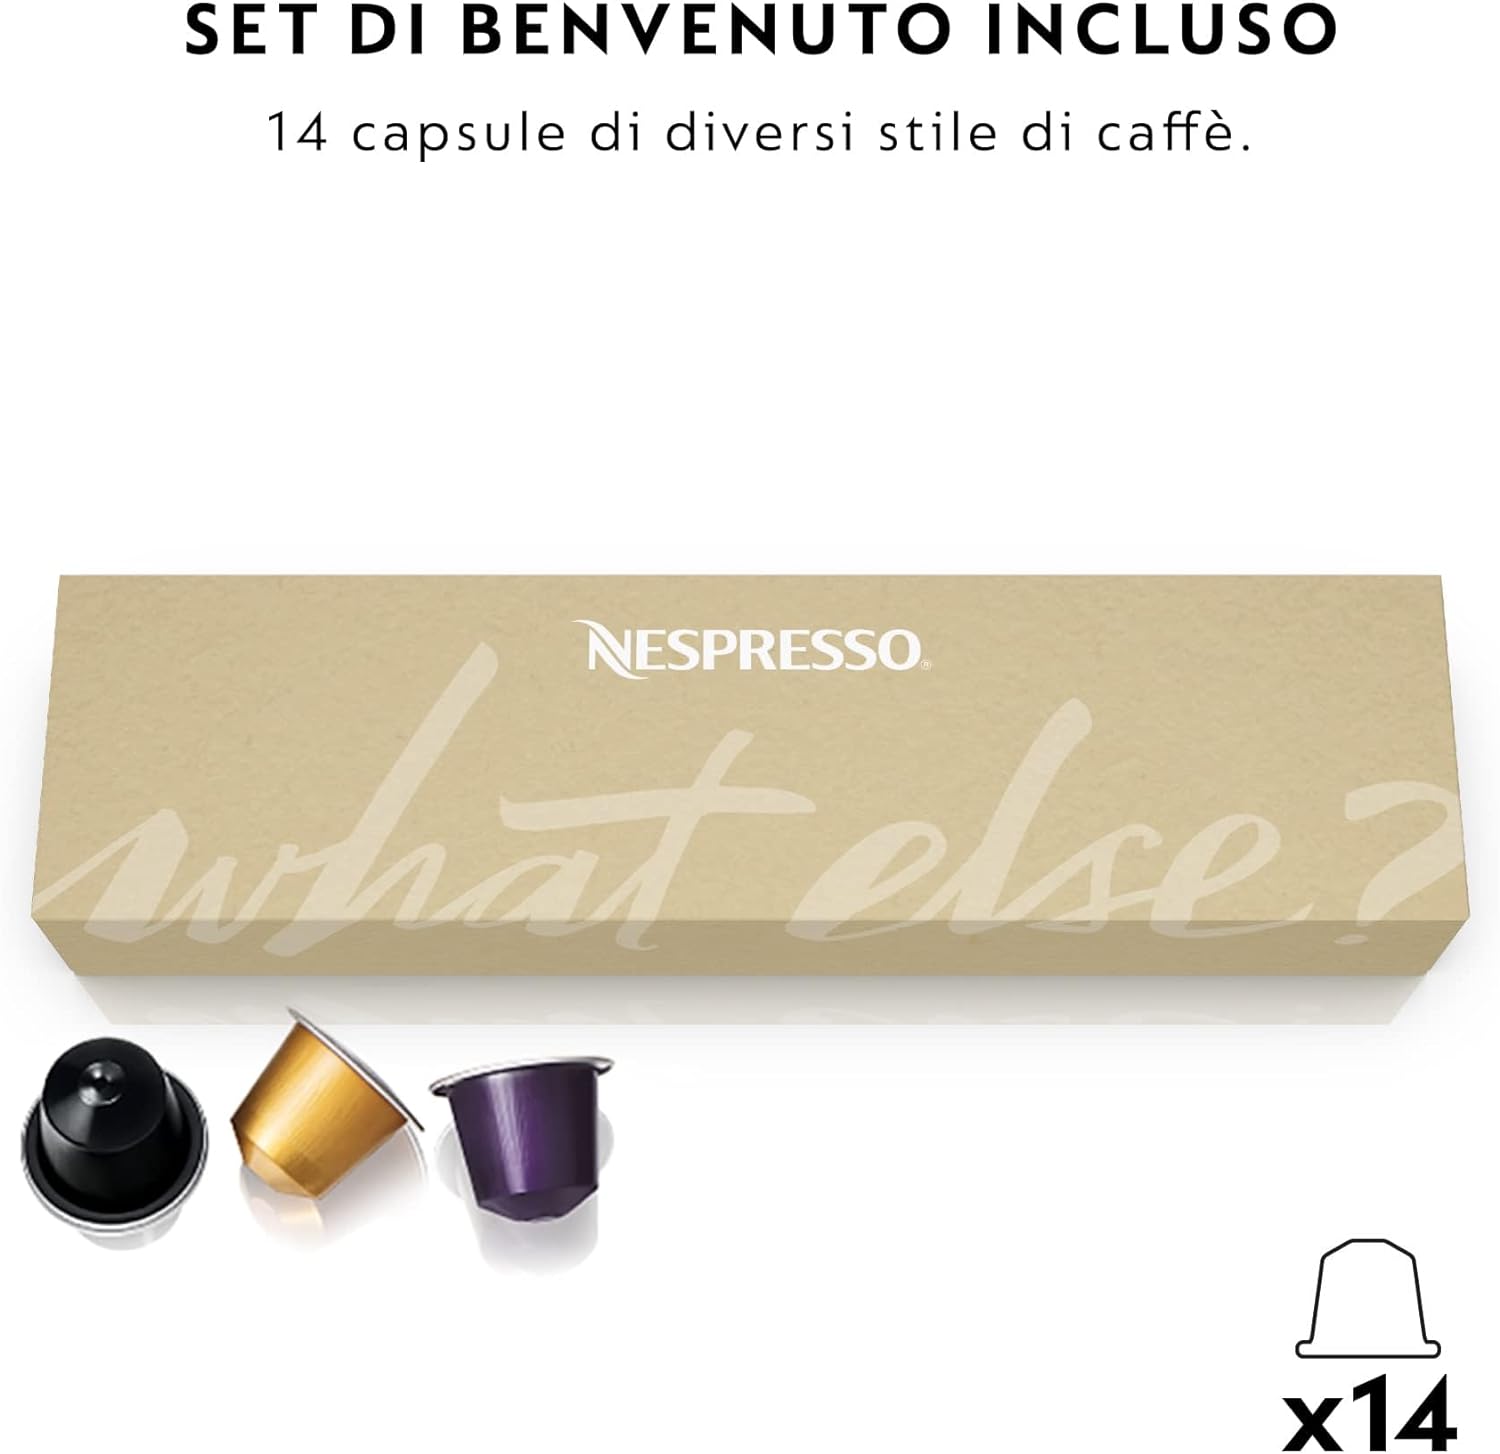 "De'Longhi Nespresso Essenza Mini EN85.B Coffee Machine: Compact Design with Nespresso Capsule System, 0.6L Water Tank, in Stylish Black"